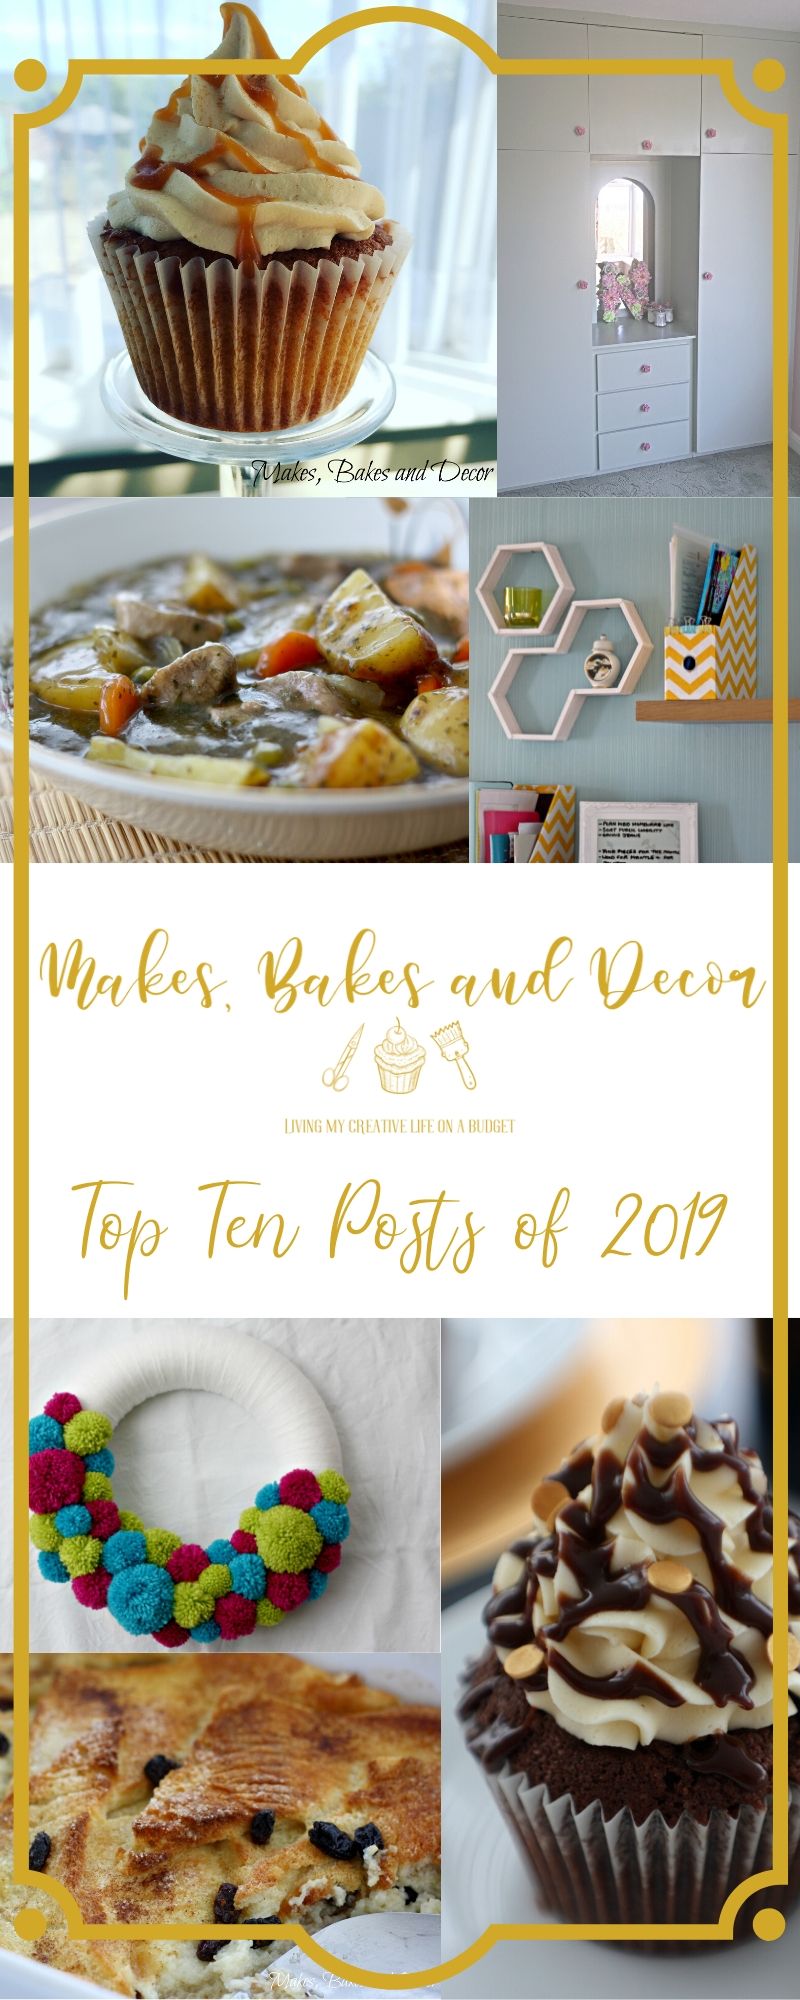 top ten posts of 2019